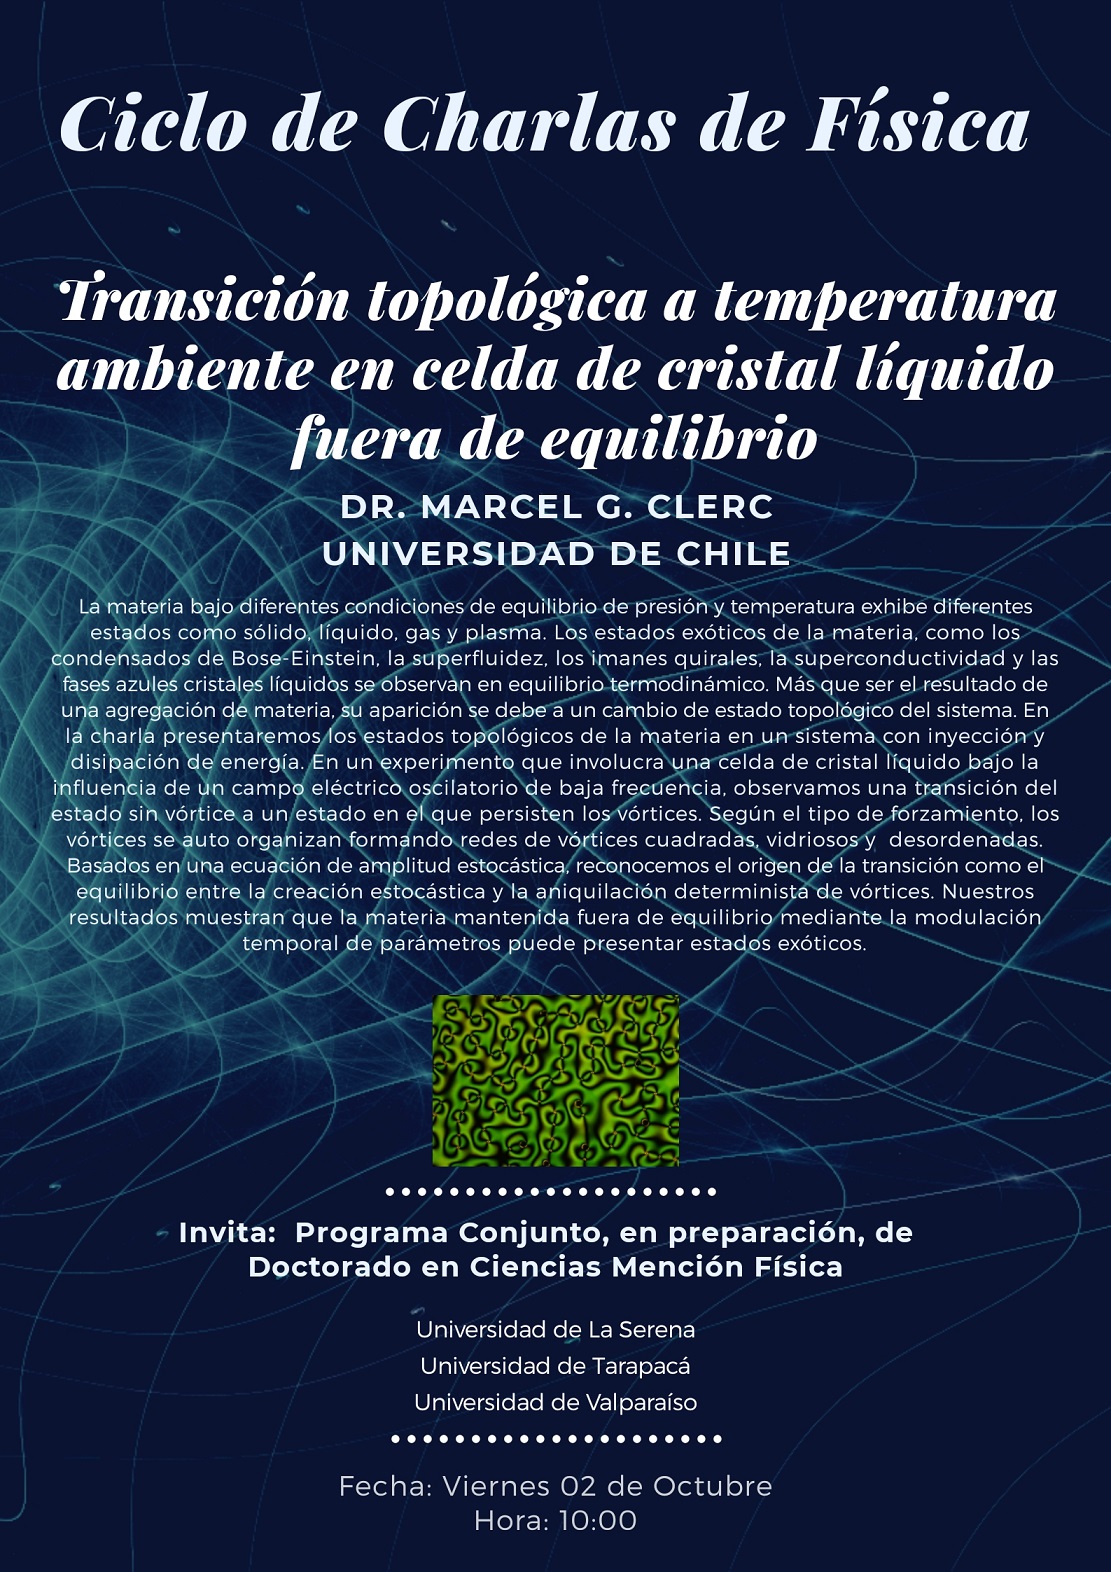 [Viernes 10:00AM] Ciclo de Charlas en Física: “Transición topológica a temperatura ambiente en celda de cristal líquido fuera de equilibrio”